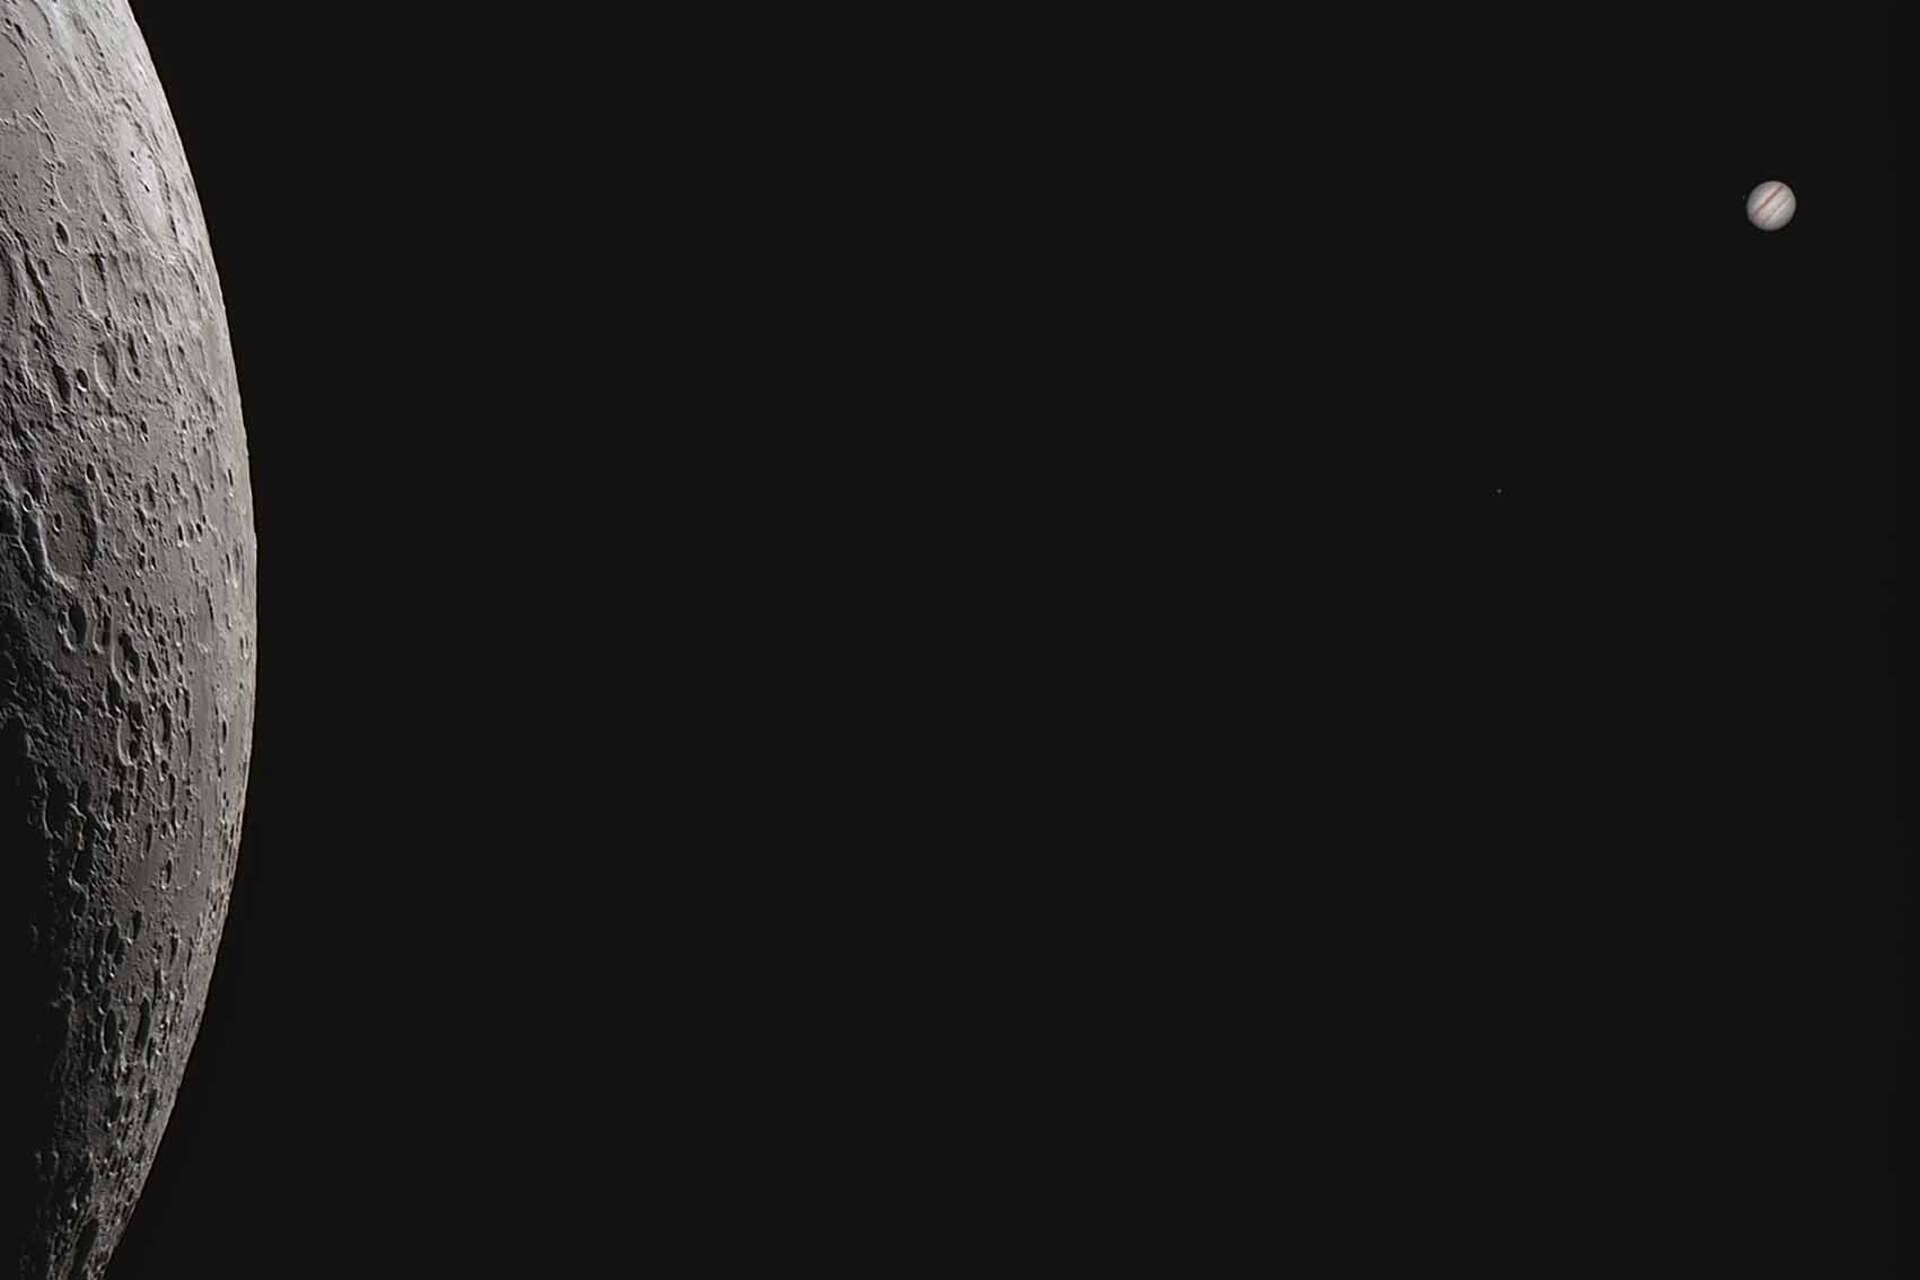 Космос между нами. Автор - Лукаш Суйка, Польша. Победитель в категории "Планеты, кометы и астероиды"